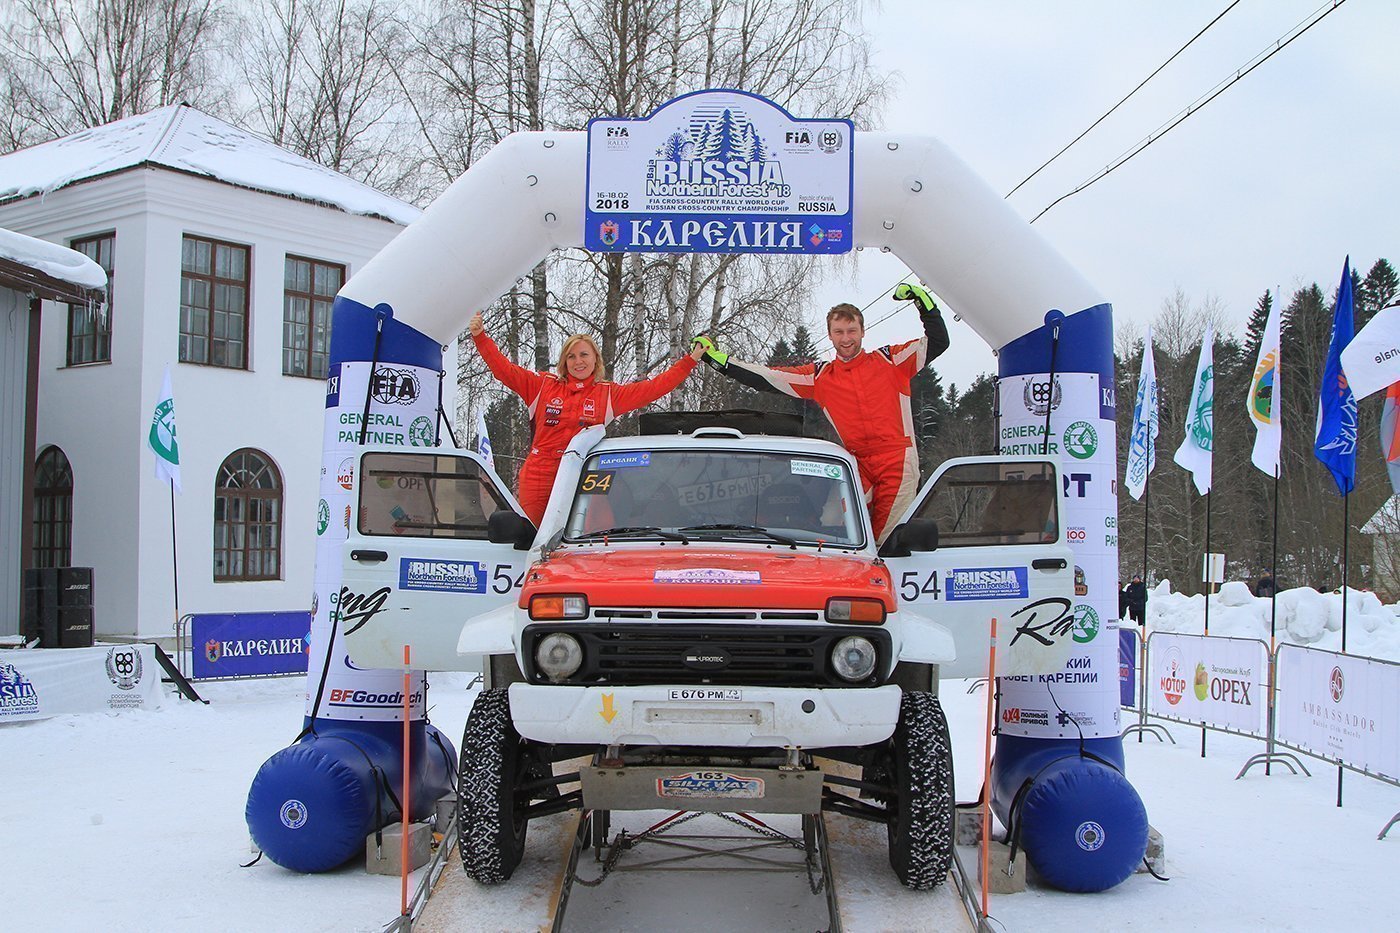 Дмитрий Воронов стал третьим в абсолюте и одержал победу в зачёте «Рейд Спорт»